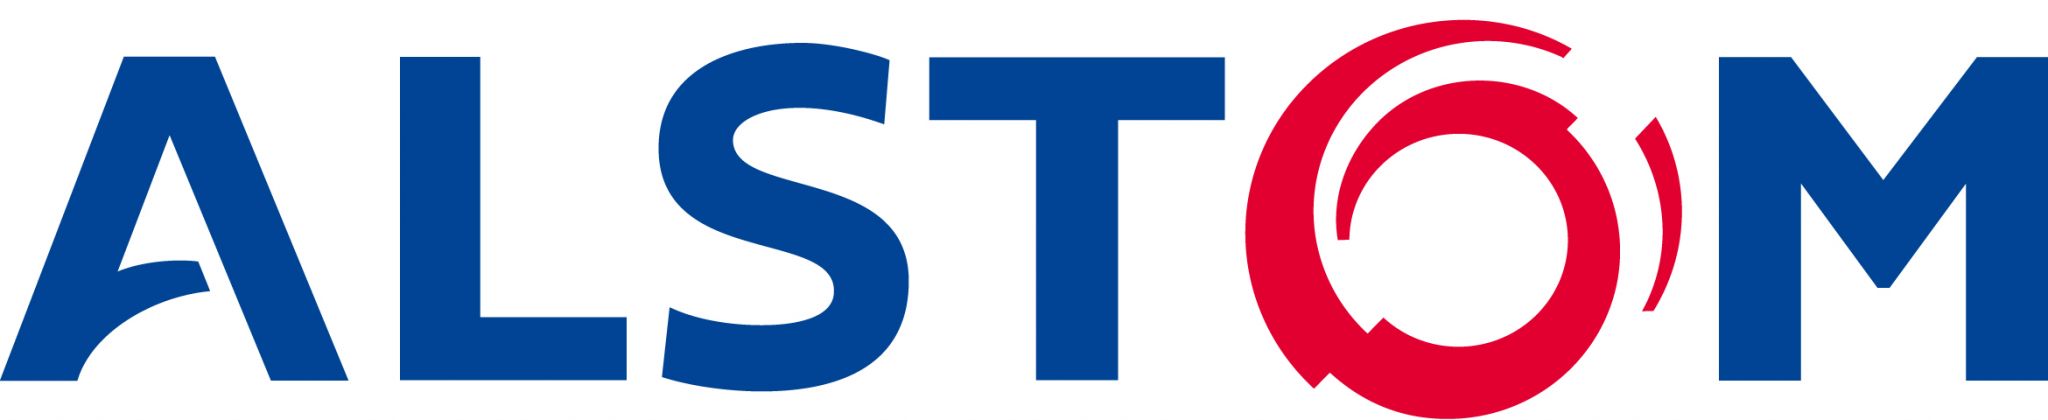 Alstom_Logo.jpg